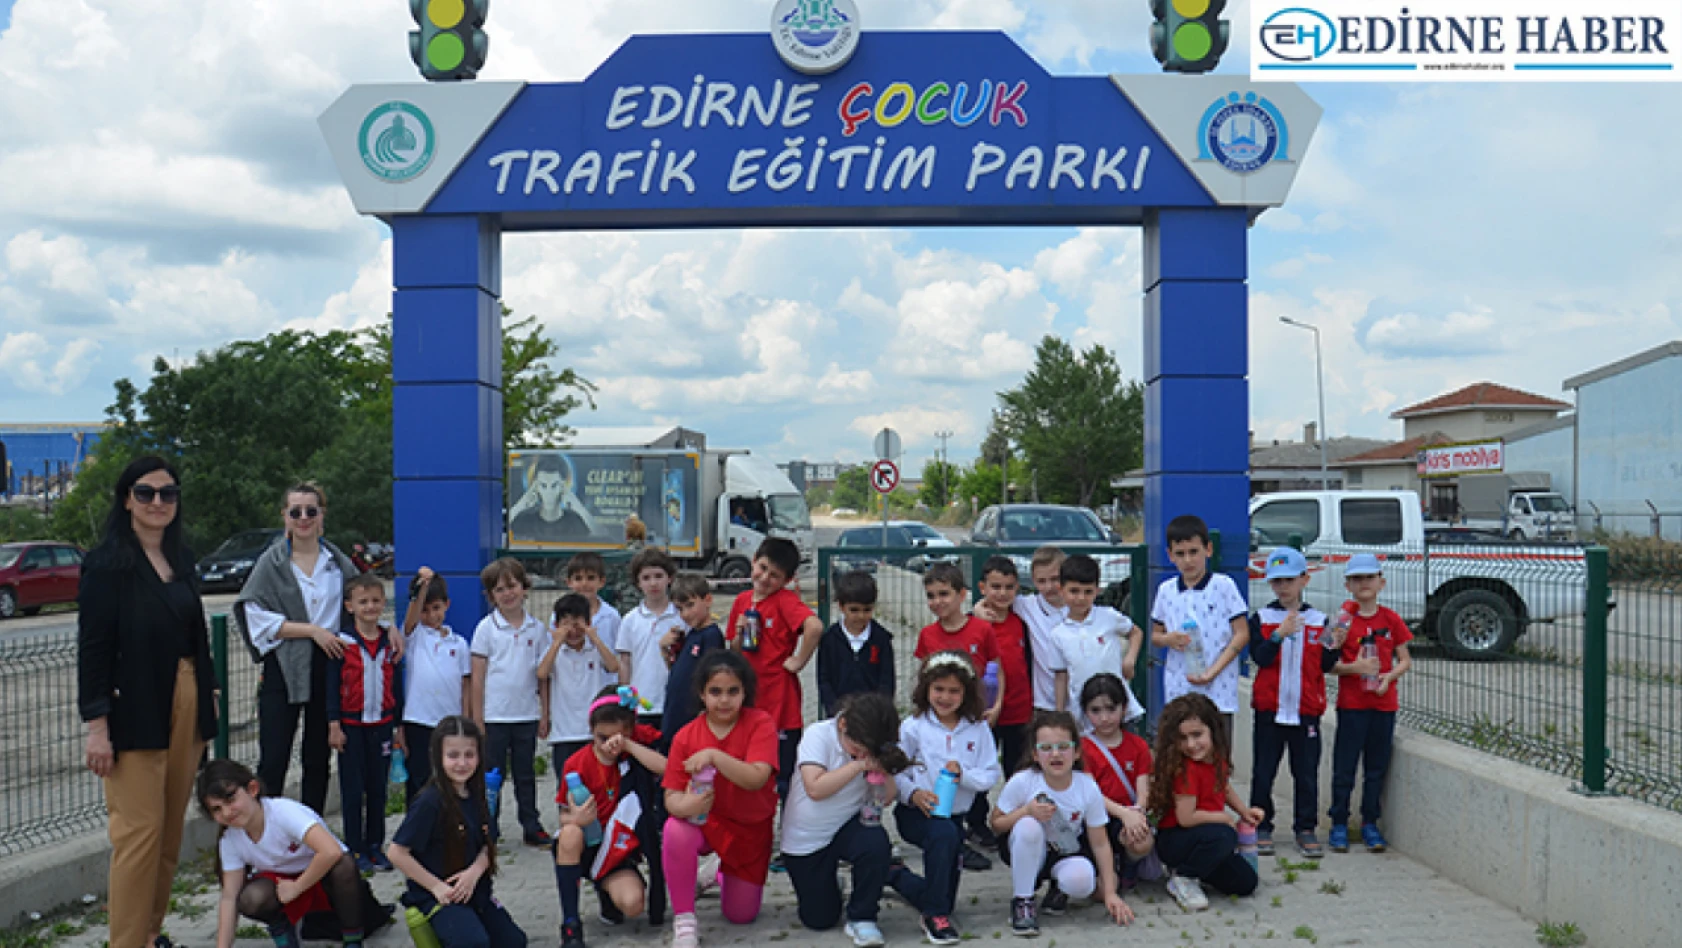 TED Edirne Koleji İlkokulu 1. Sınıf öğrencileri trafik eğitim parkını gezerek kuralları öğrendi. 